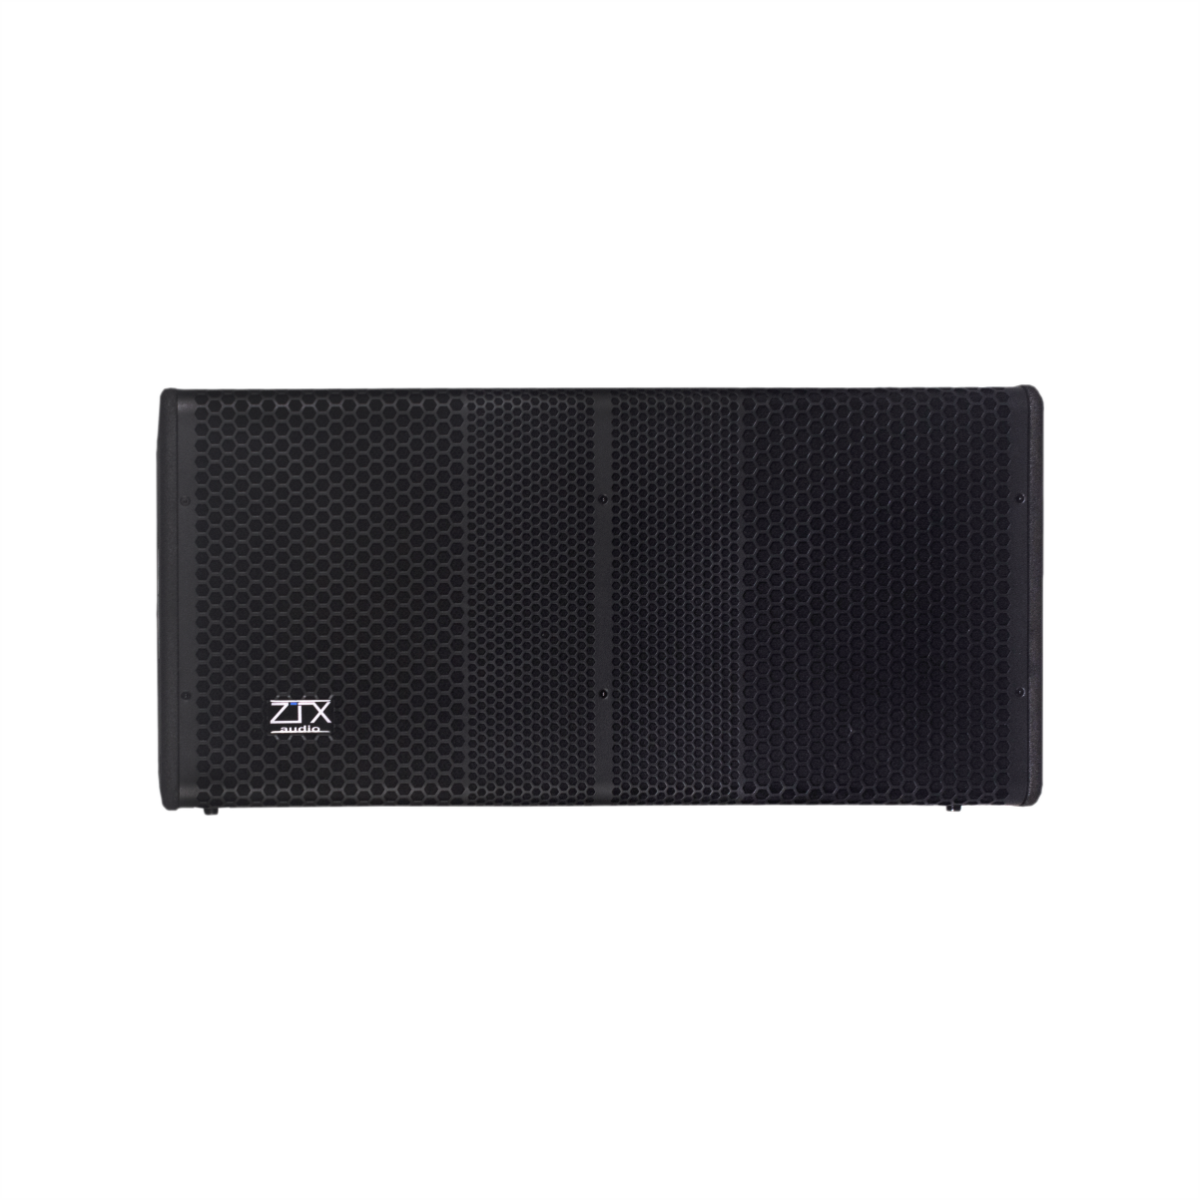 ZTX audio VRX-212A Активный субвуфер с DSP процессором